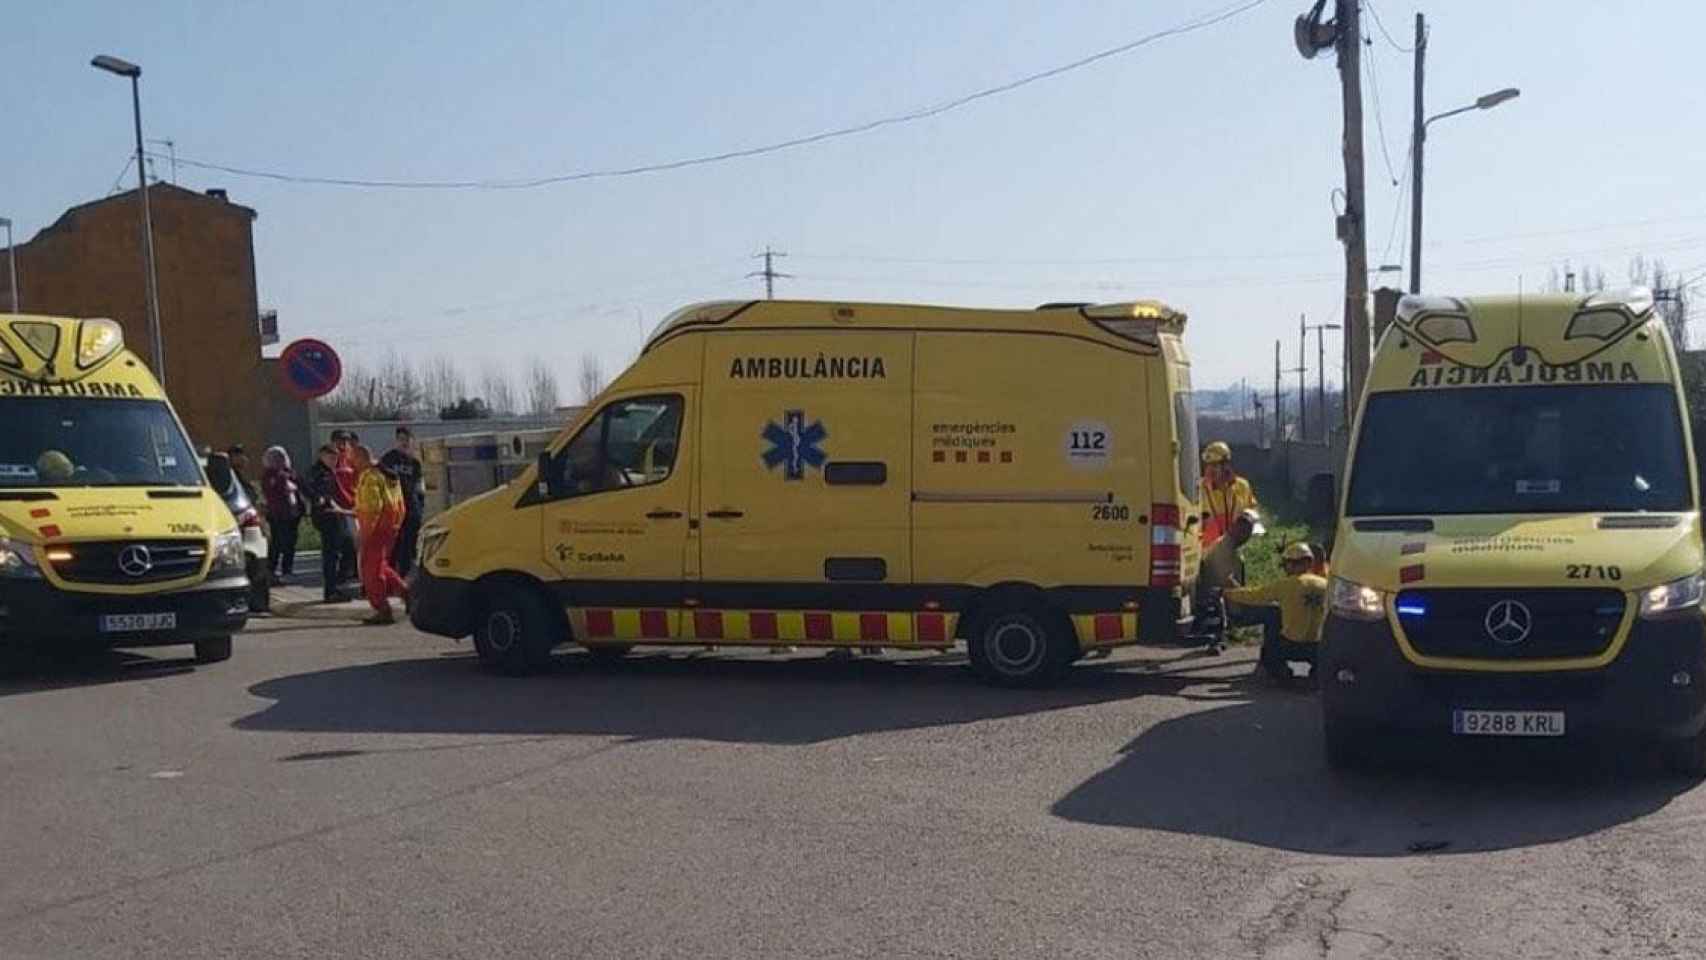 Ambulancias para atender a los heridos por inhalación de humo en Lleida / @semgencat